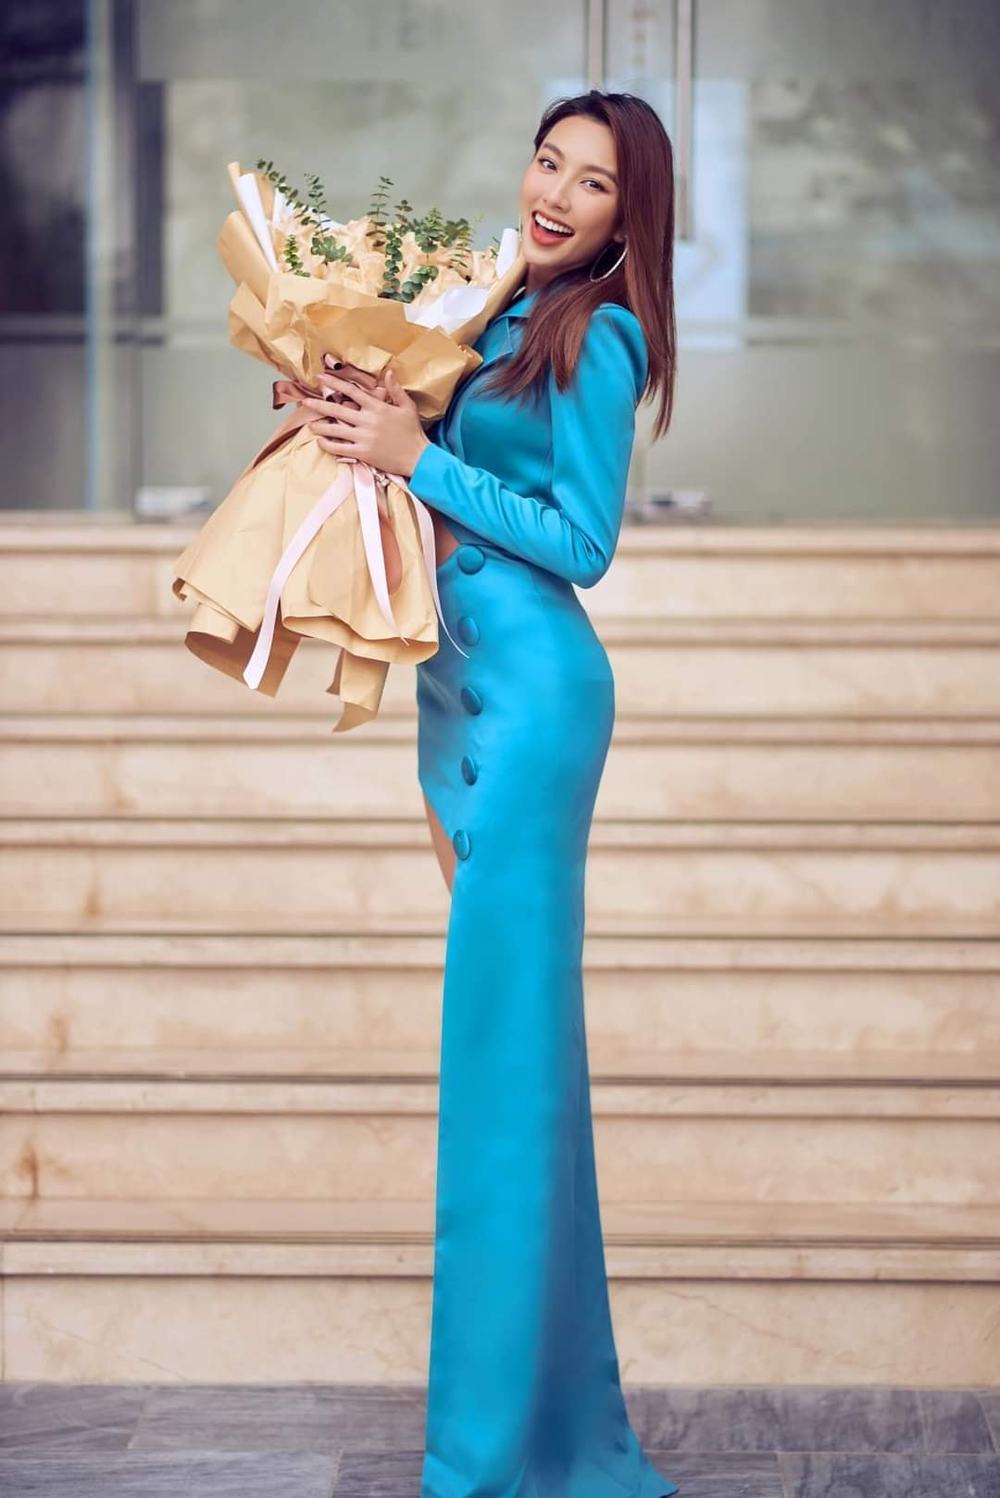 Không cần 'hở bạo' Hoa hậu Thùy Tiên vẫn cuốn hút nhờ thần thái 'sang chảnh' ngút ngàn, bộ trang phục được CĐM khen 'nức nở' - Ảnh 9